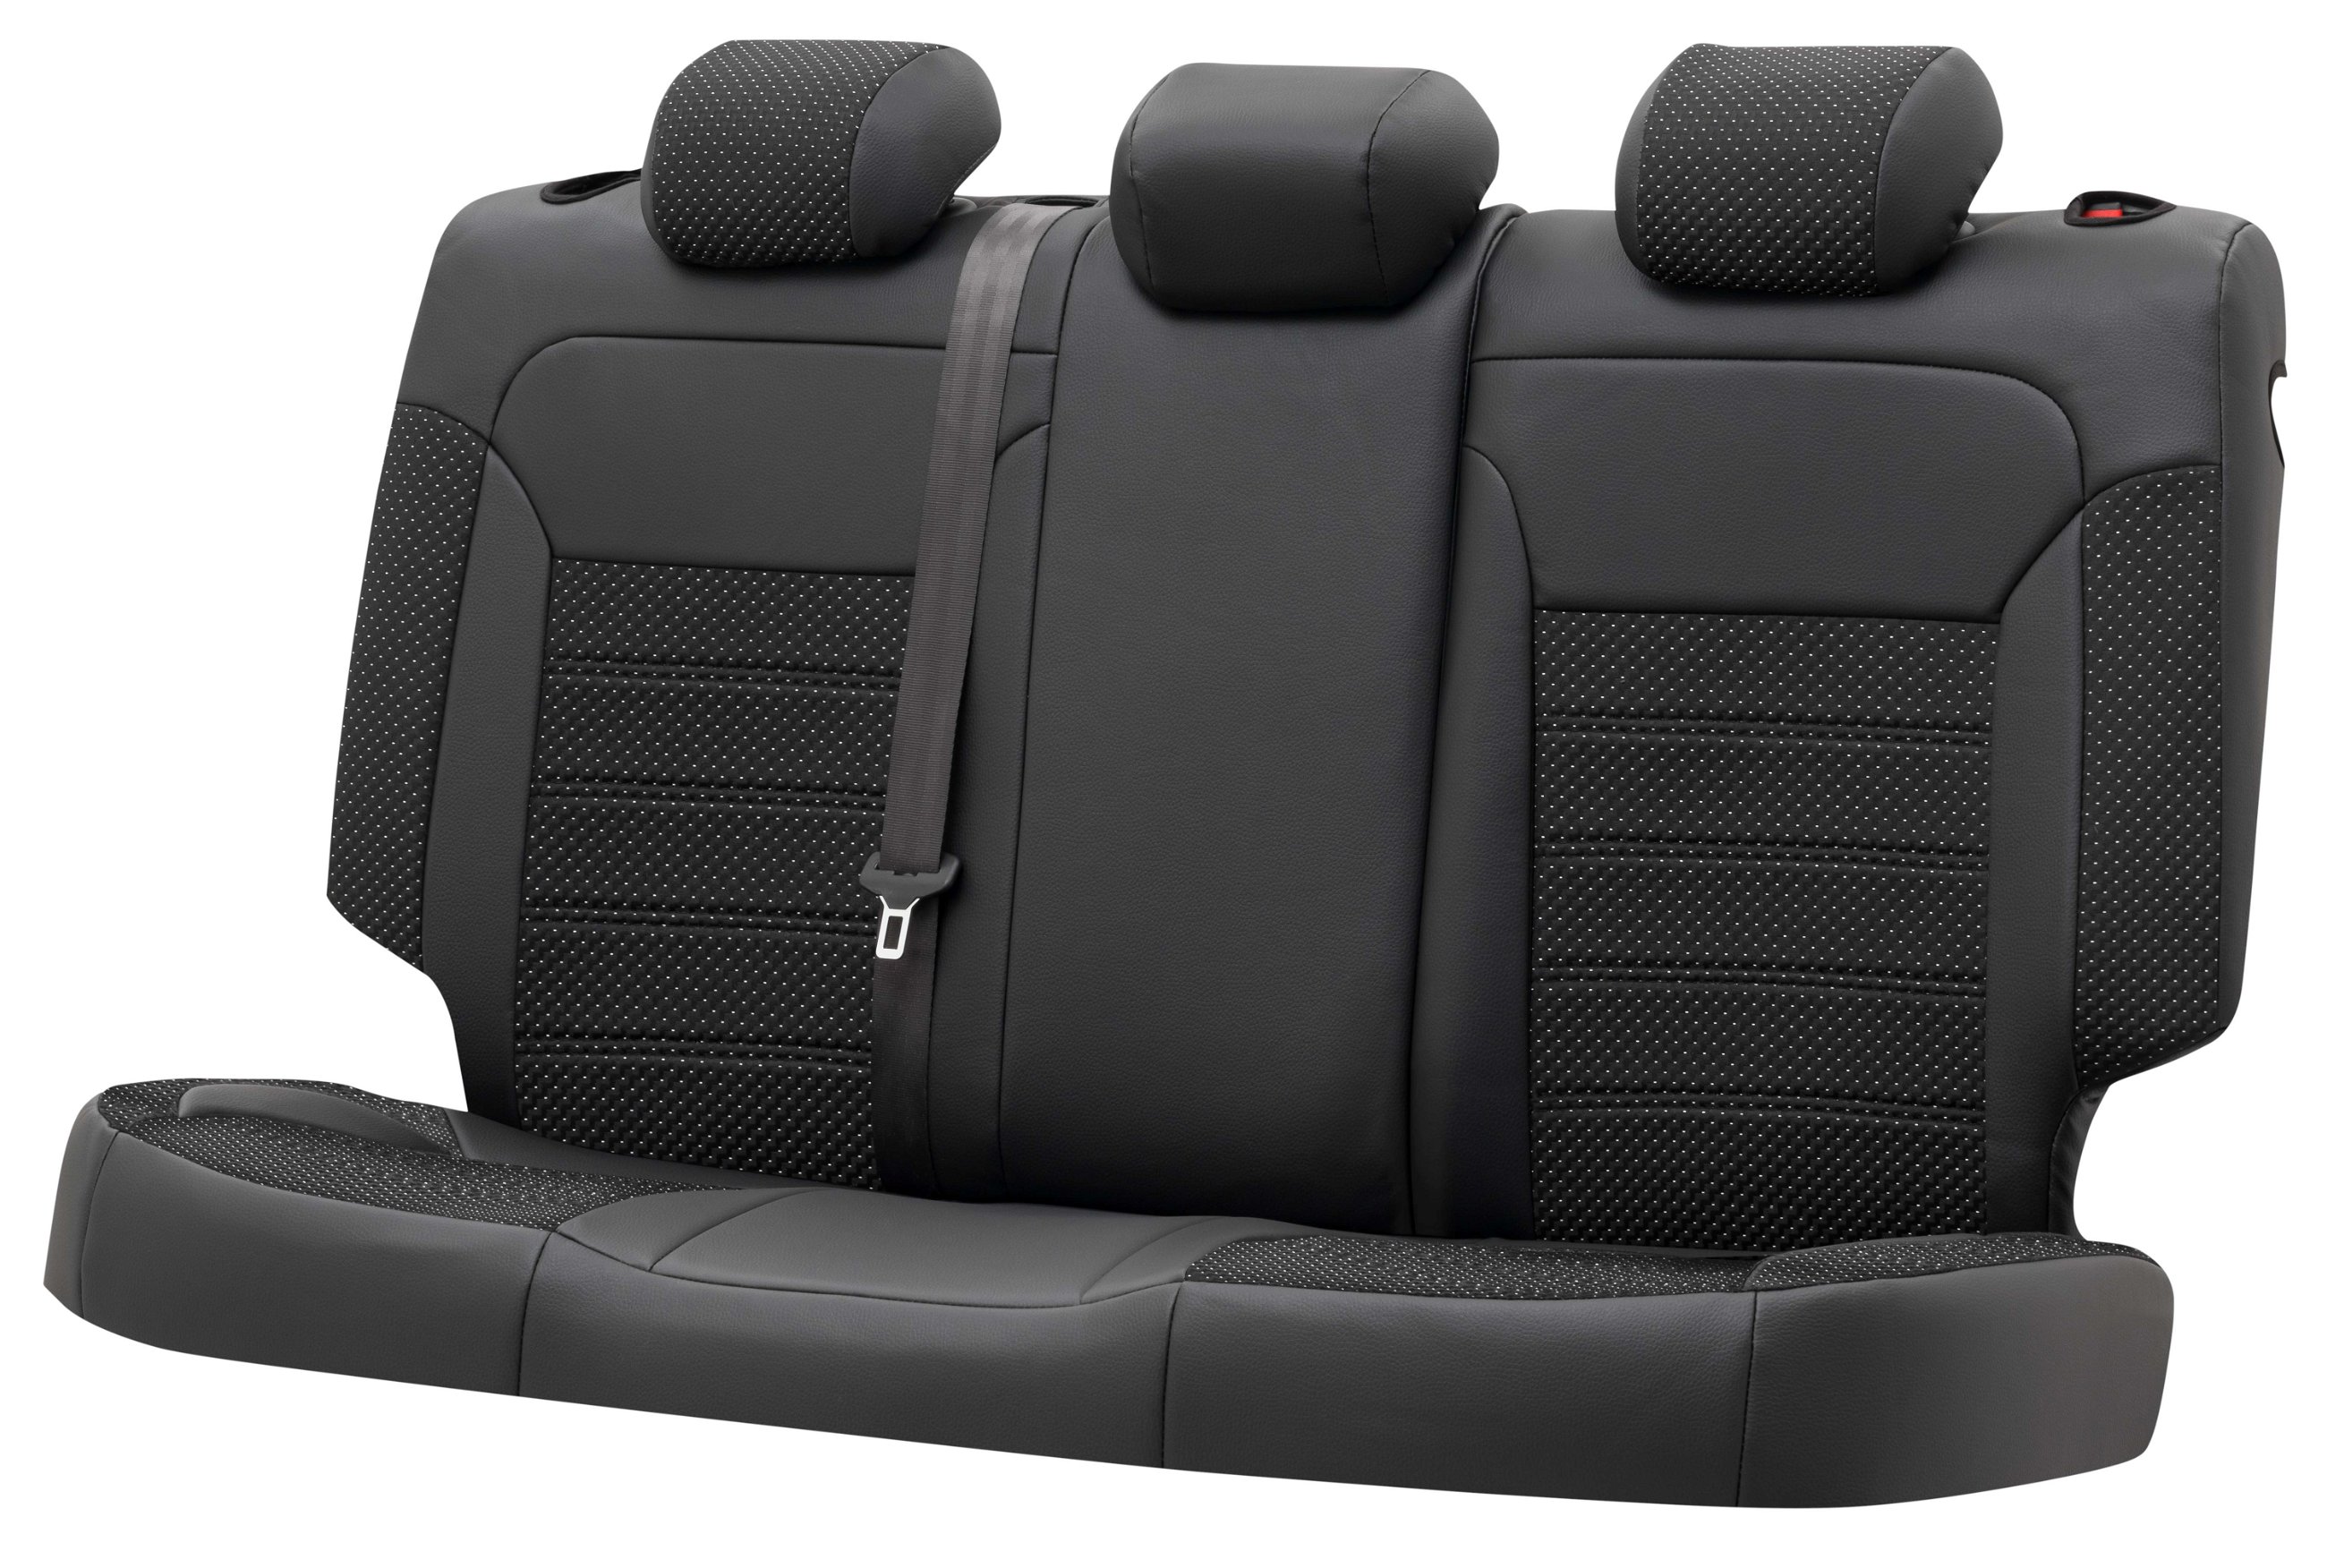 Coprisedili 'Torino' per VW Passat Comfortline 2015 fino ad Oggi - 1 Coprisedili posteriore per sedili normali